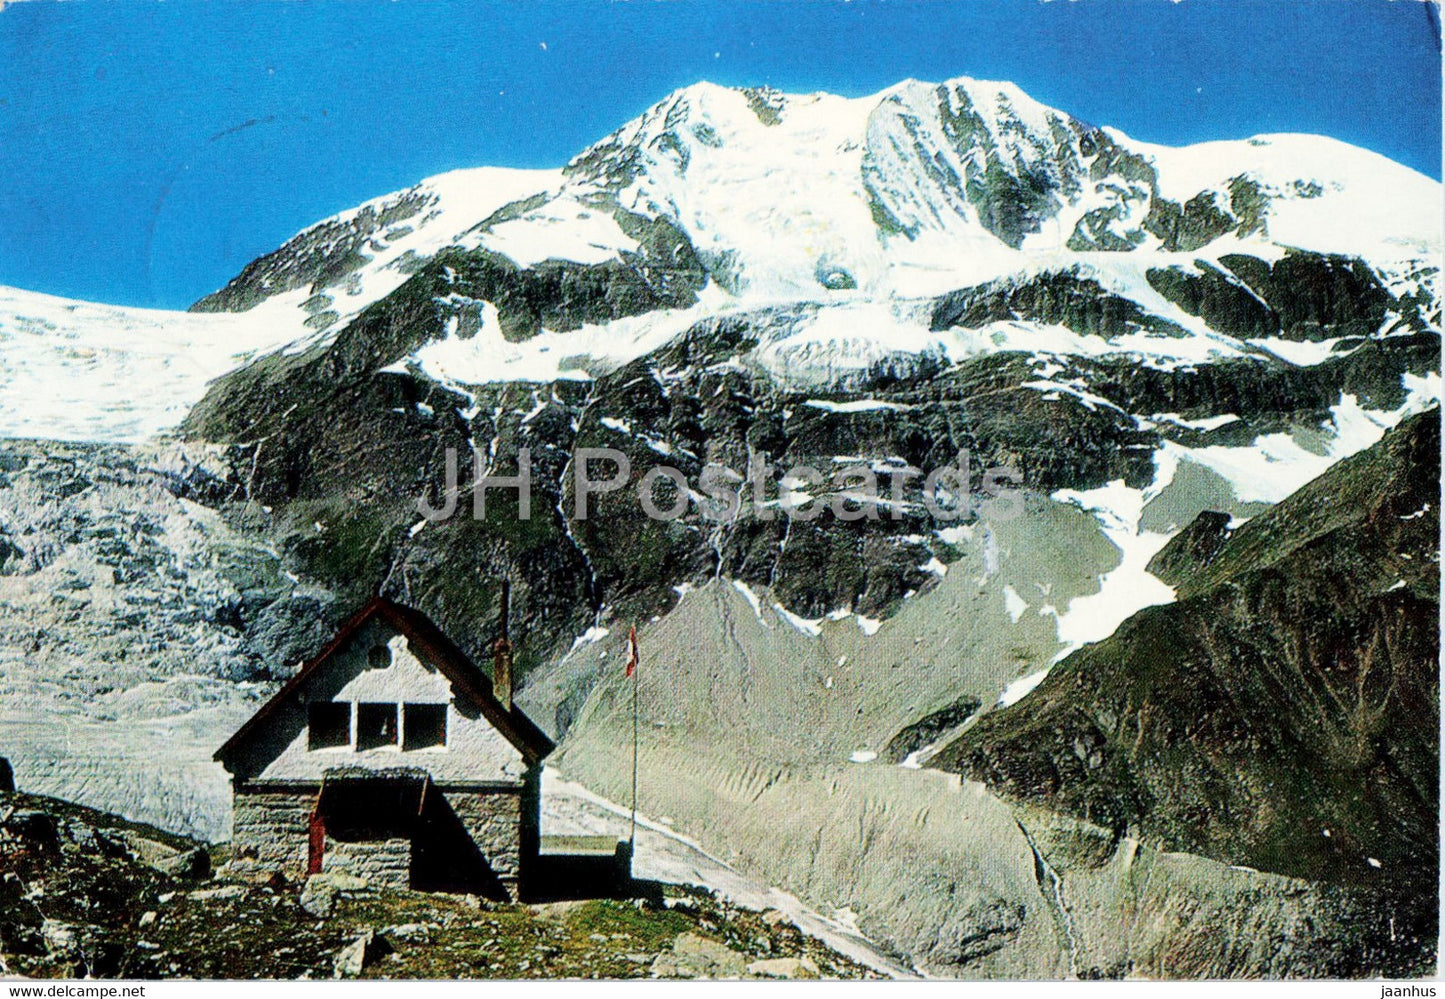 Turtmann Hutte 2519 m - Turtmanngletscher und Diablons - 50951 - Switzerland - used - JH Postcards